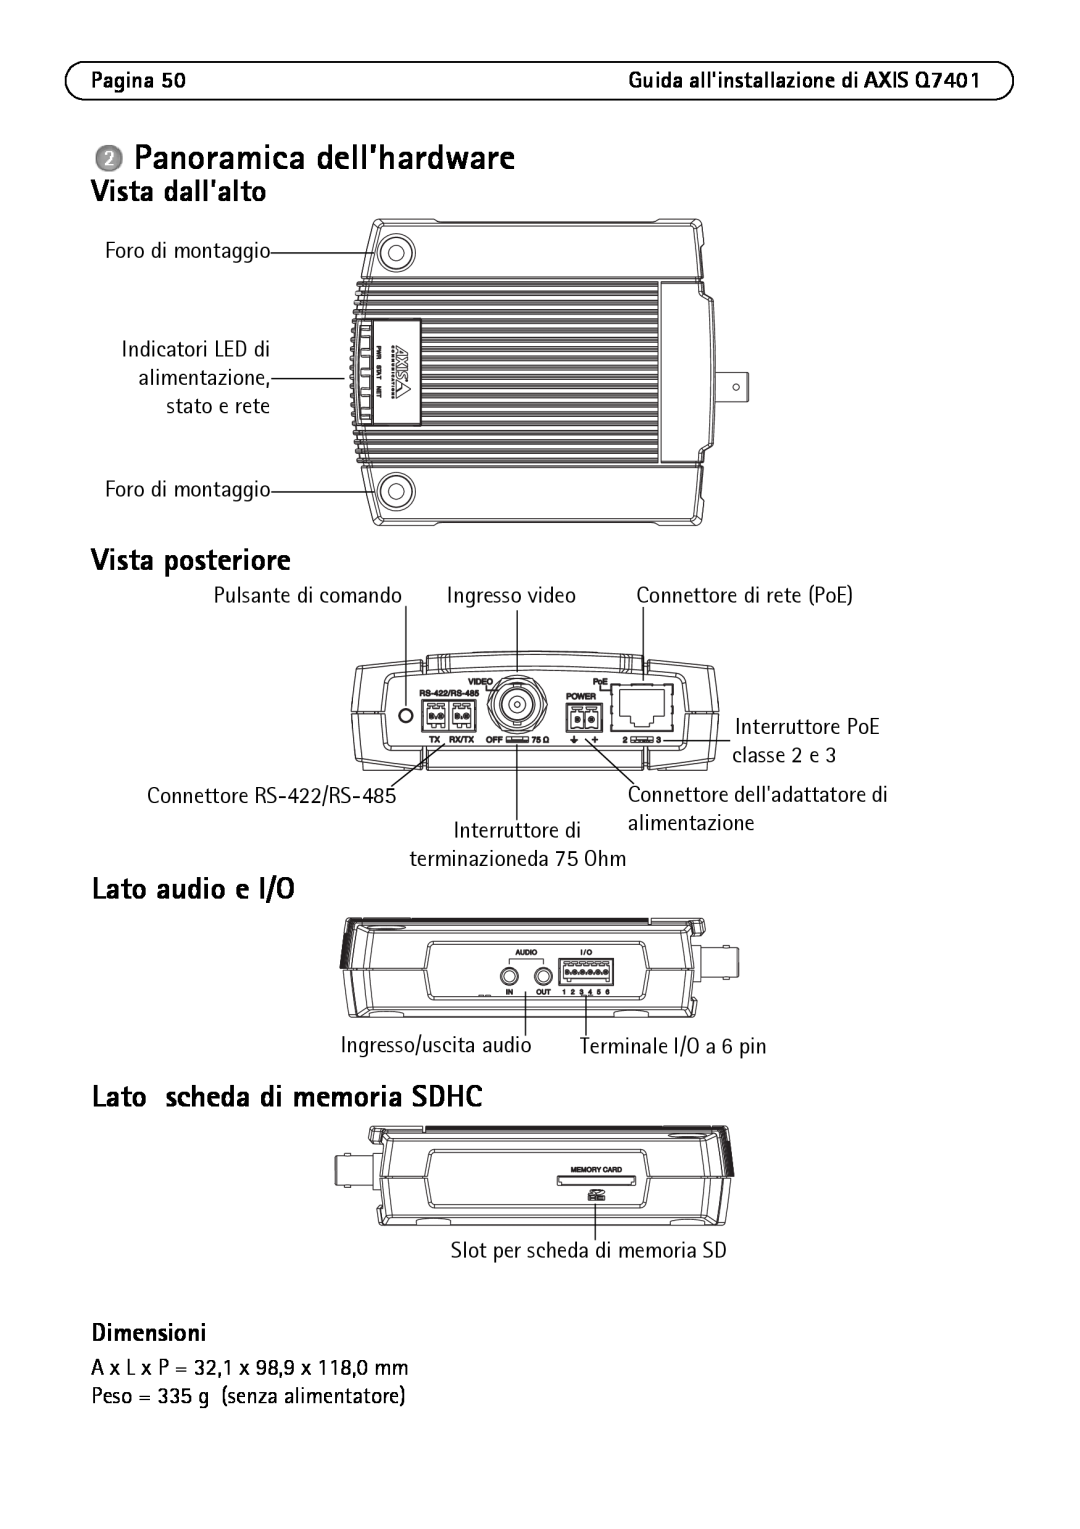 Axis Communications Q7401 manual Panoramica dell’hardware, Vista dall’alto, Vista posteriore, Lato audio e I/O, Pagina 